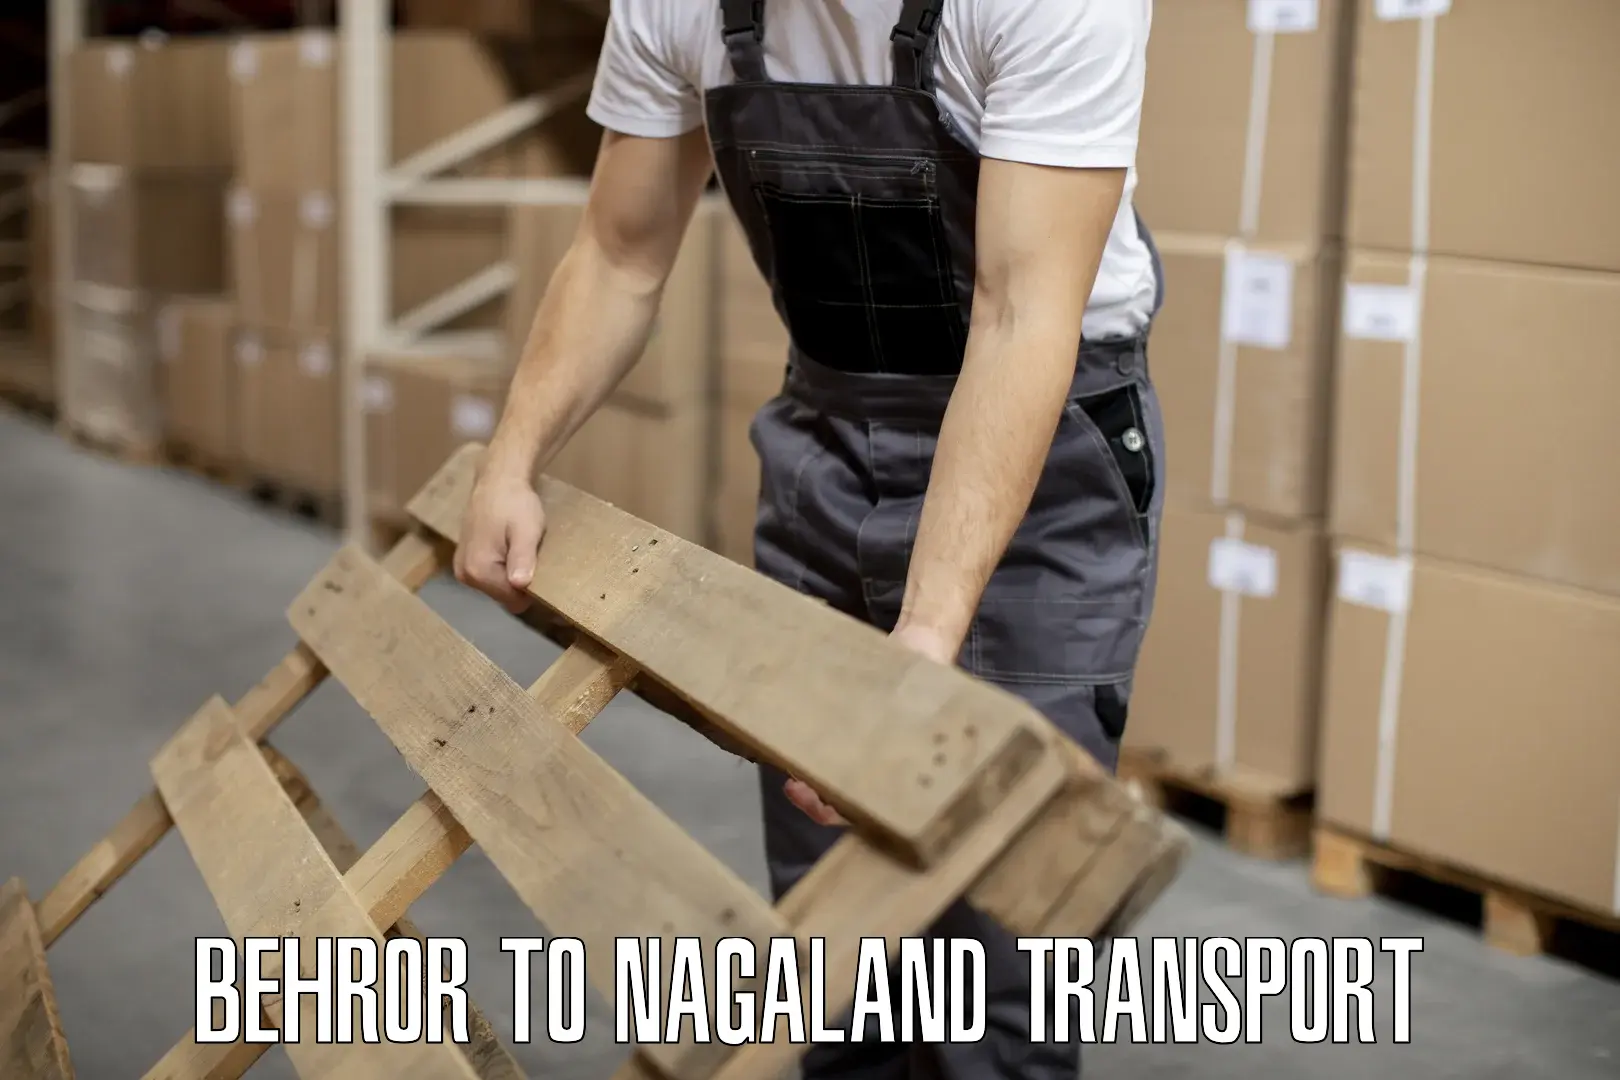 Online transport Behror to Nagaland